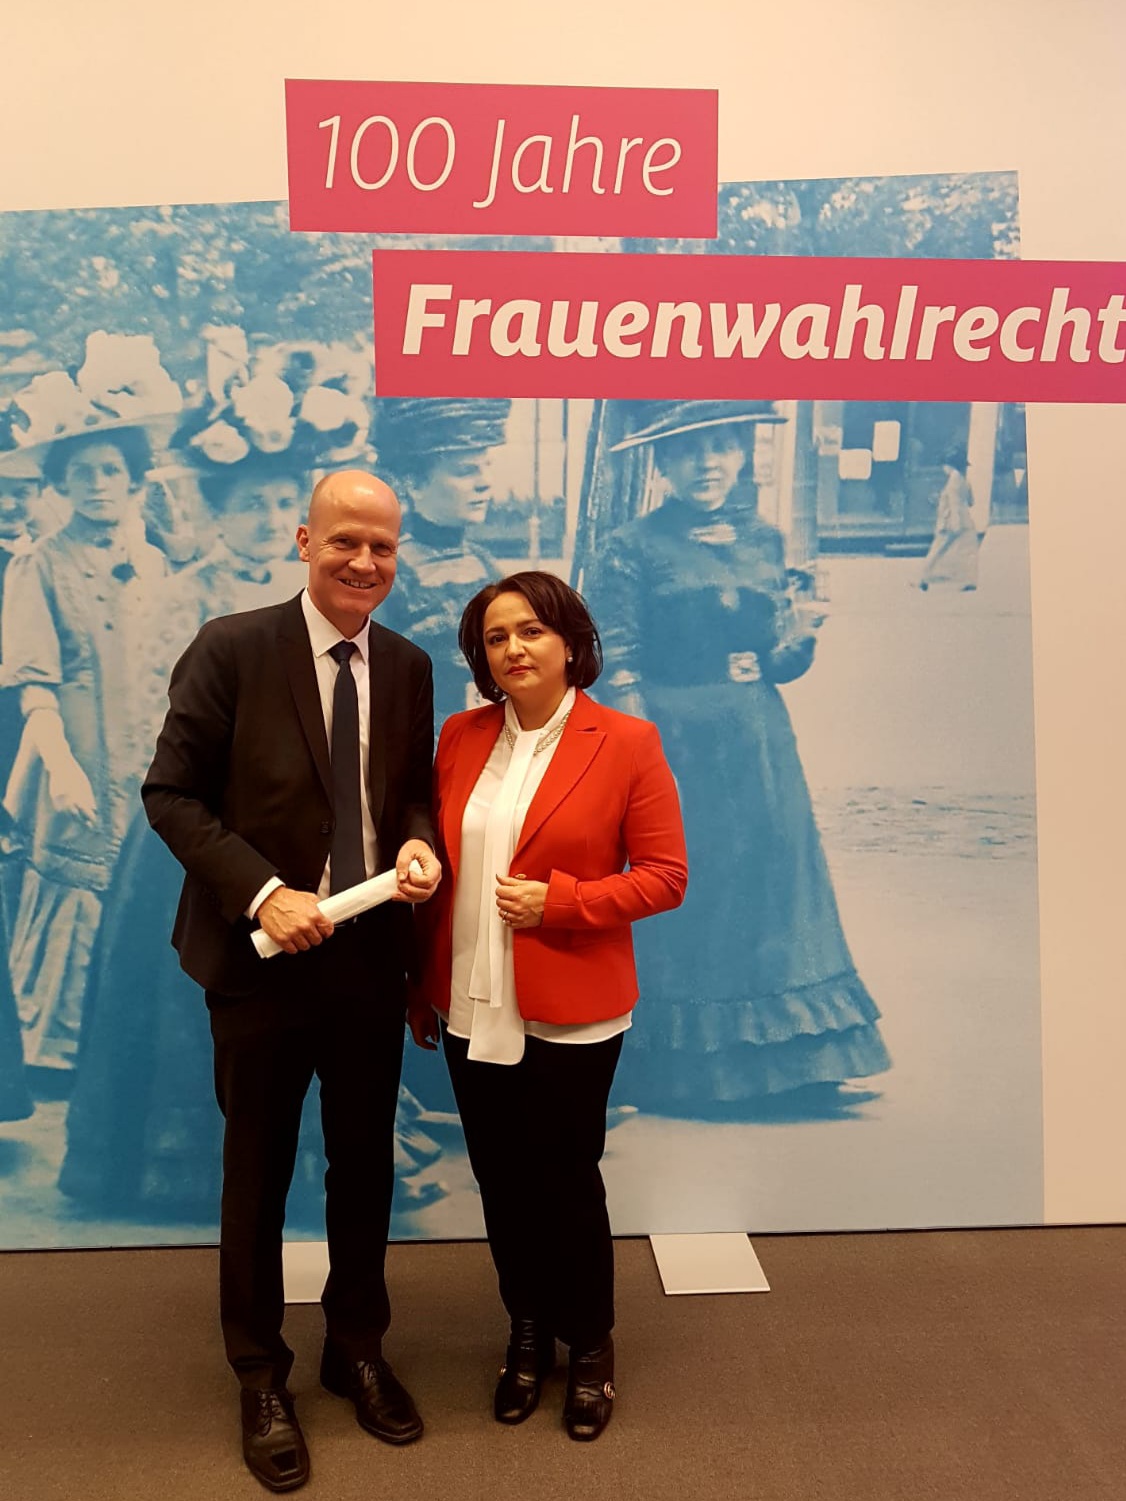 Galina Ortmann mit Ralf Brinkhaus, Vorsitzender der CDU CSU-Fraktion im Bundestag, 100 Jahre Frauenwahlrecht im Bundestag am 28.11.2018